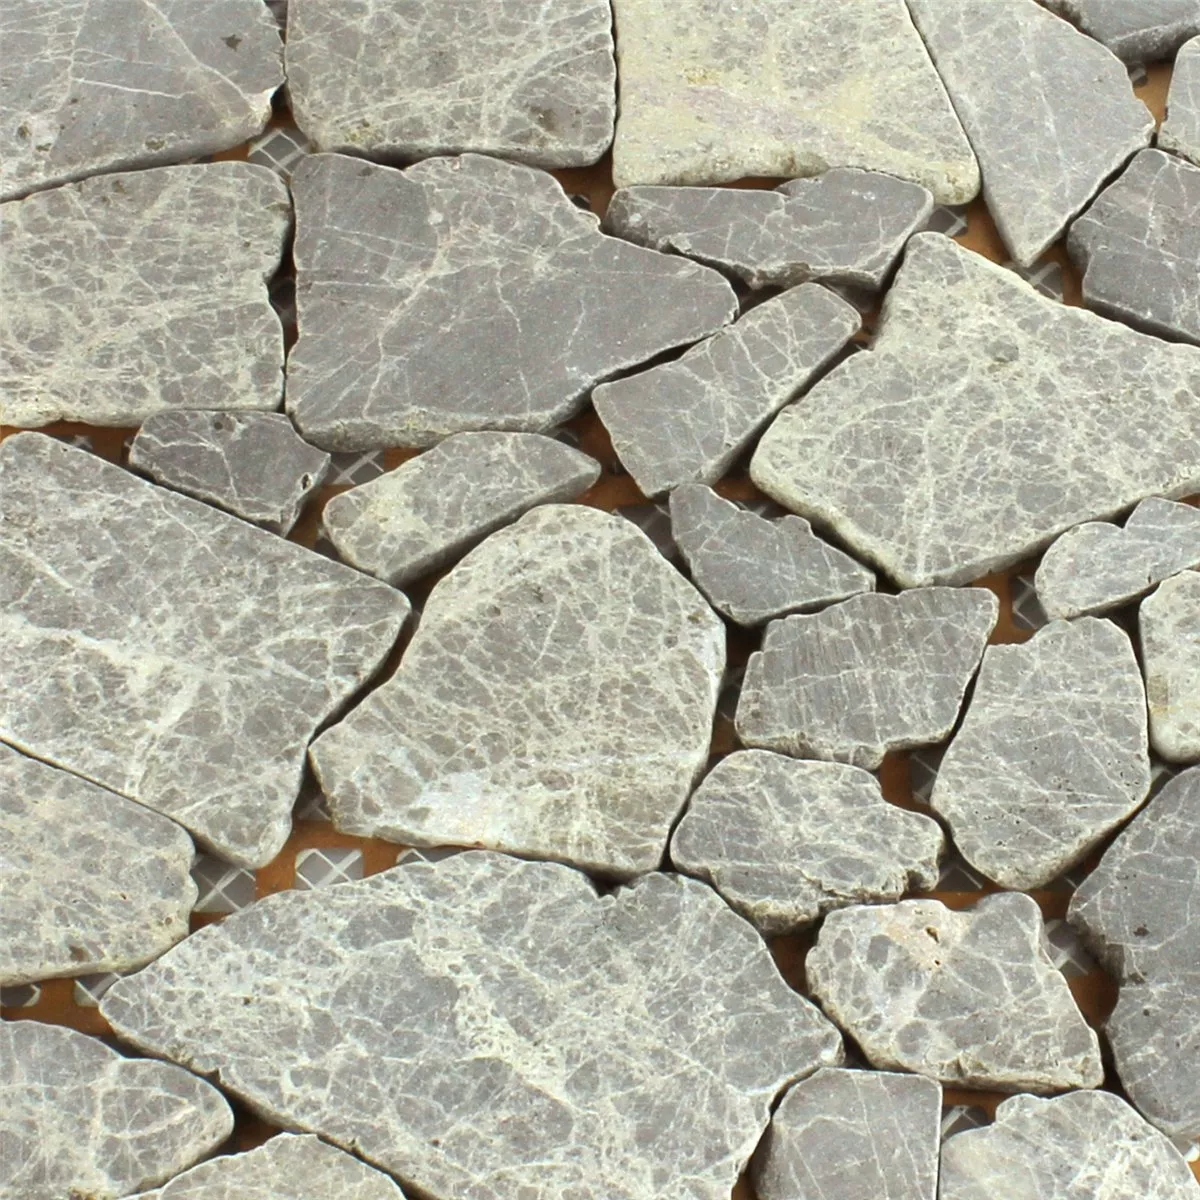 Sample Mosaic Tiles Broken Marble Coffee